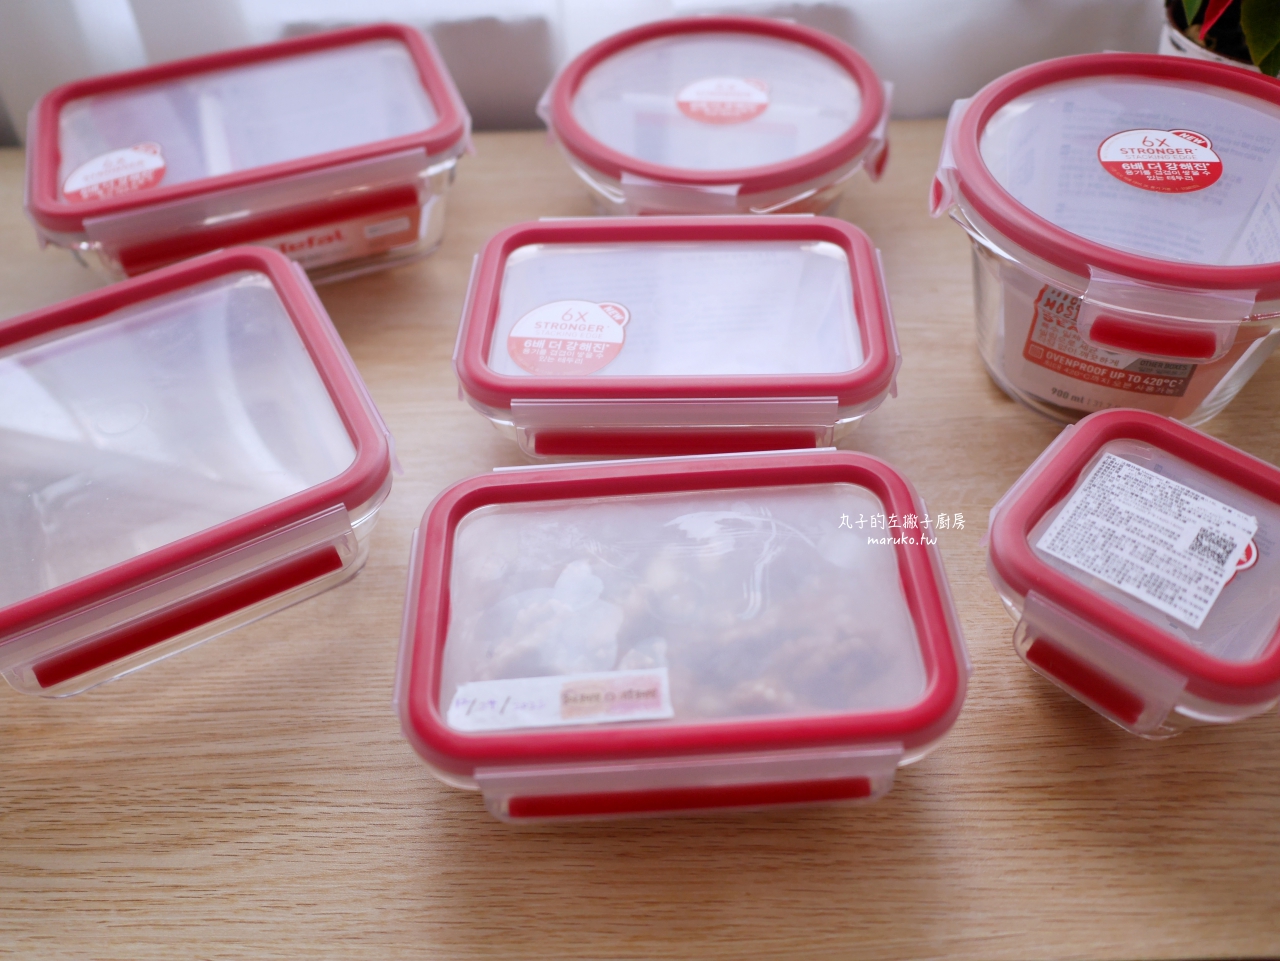 【食譜】雙色抹茶吐司 可進烤箱 Tefal 法國特福保鮮盒系列 新一代無縫膠圈耐熱玻璃保鮮盒 無縫膠圈不鏽鋼保鮮盒 一次推薦 @Maruko與美食有個約會